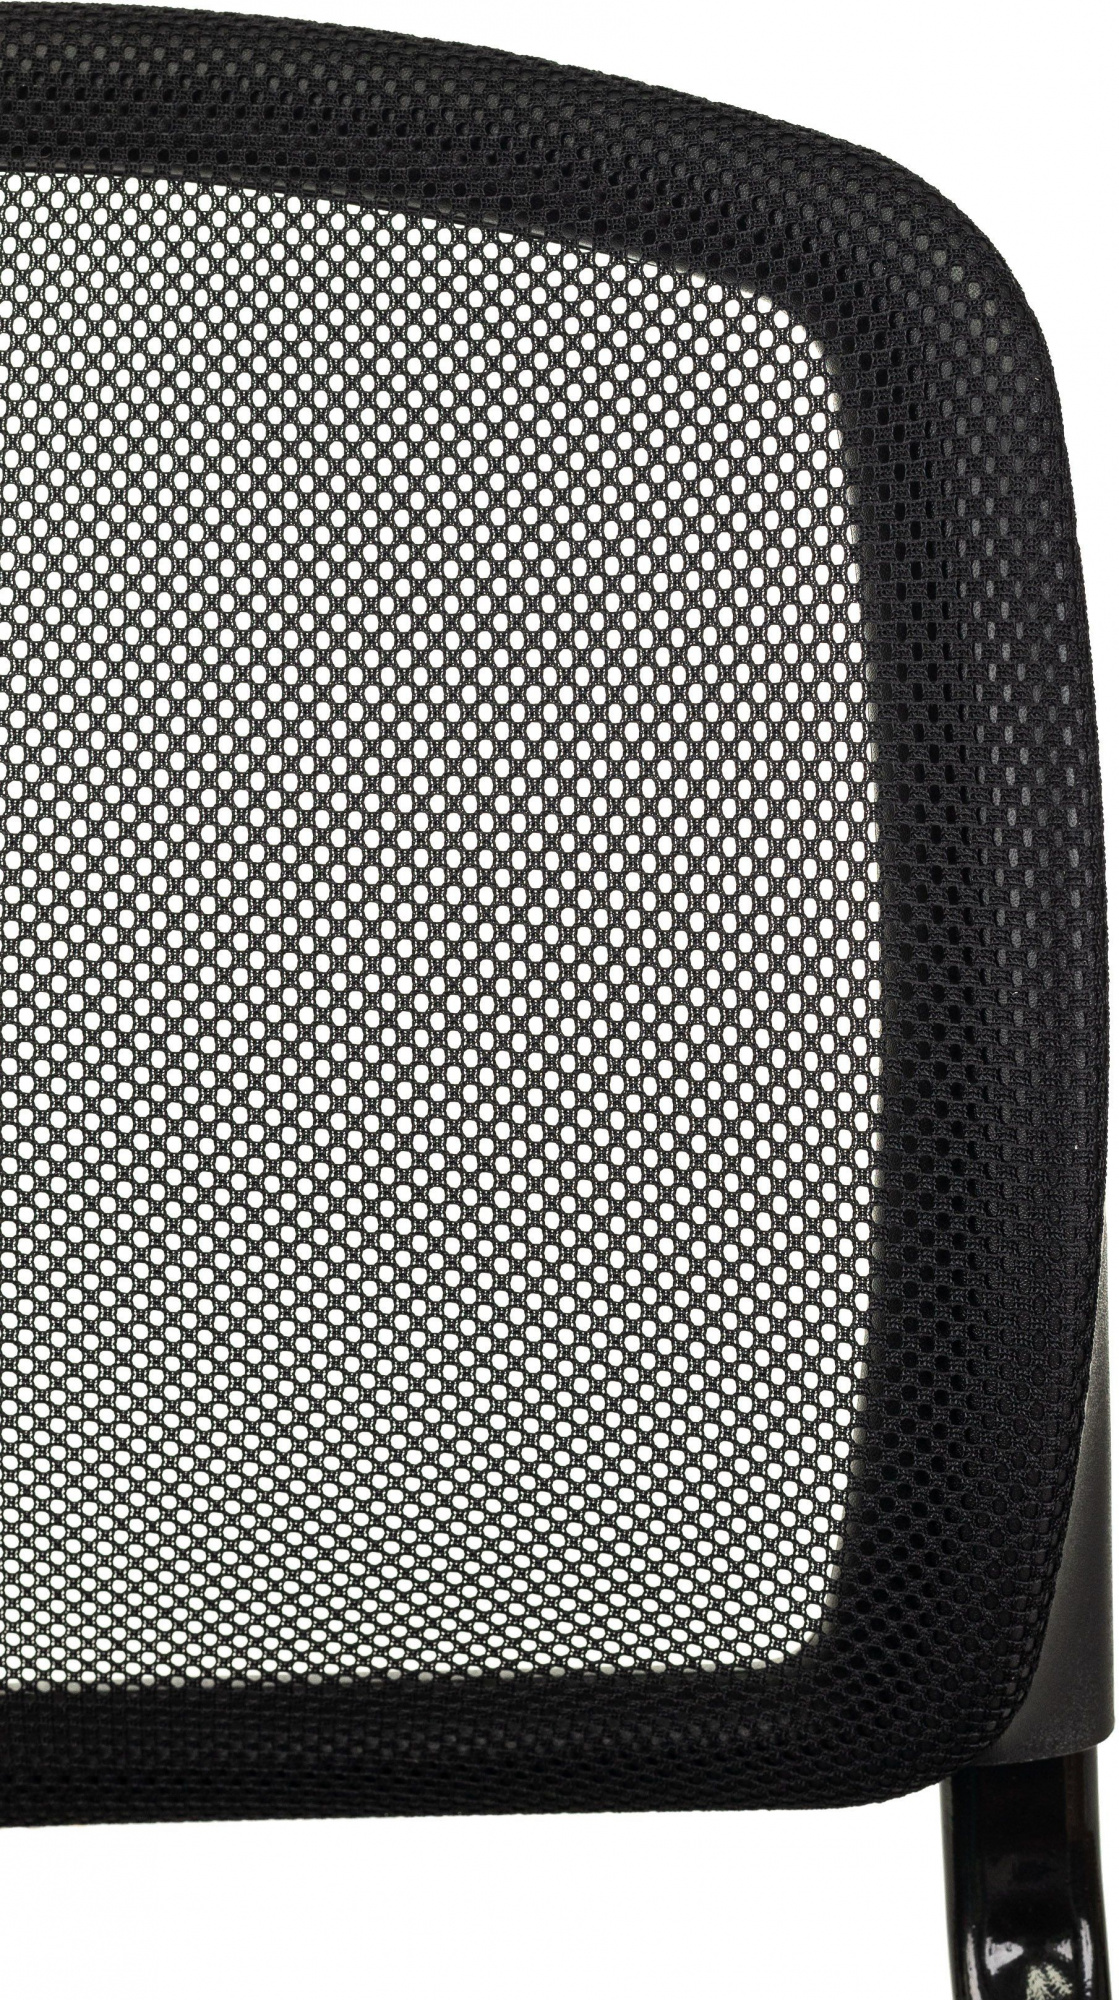 Кресло детское Бюрократ CH-296NX, обивка: сетка/ткань, цвет: черный/мультиколор, рисунок геометрия (CH-296NX/GEOMETRY) от магазина Buro.store